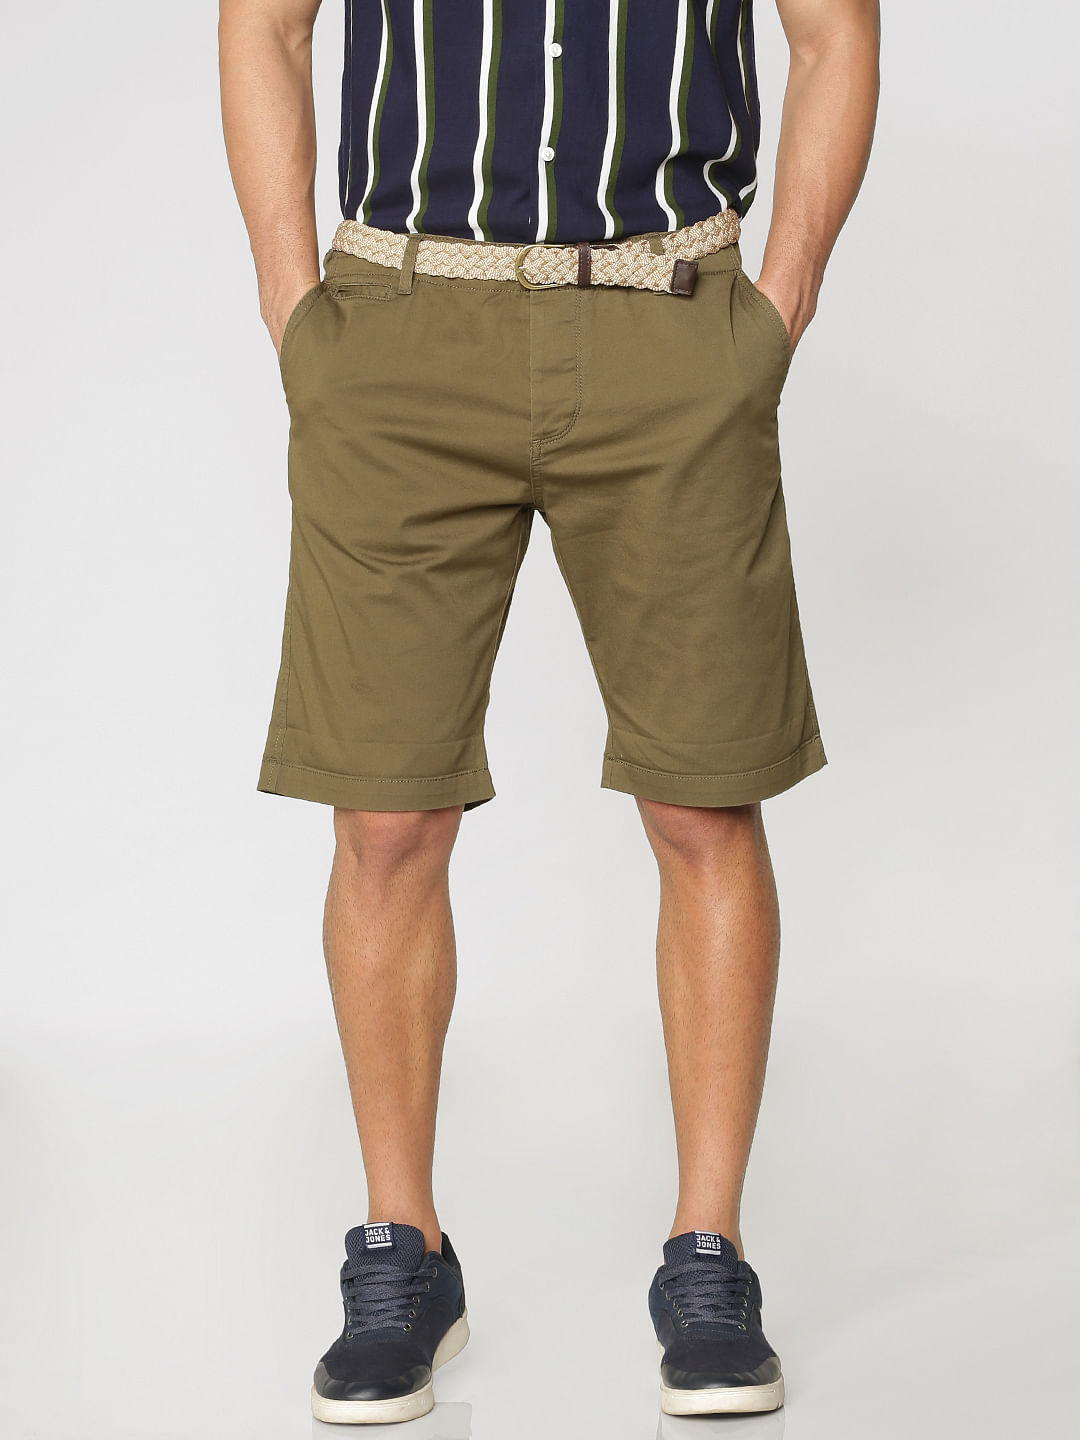 Jack & Jones Jack & Jones shorts MEN FASHION Trousers Shorts White L discount 79% 